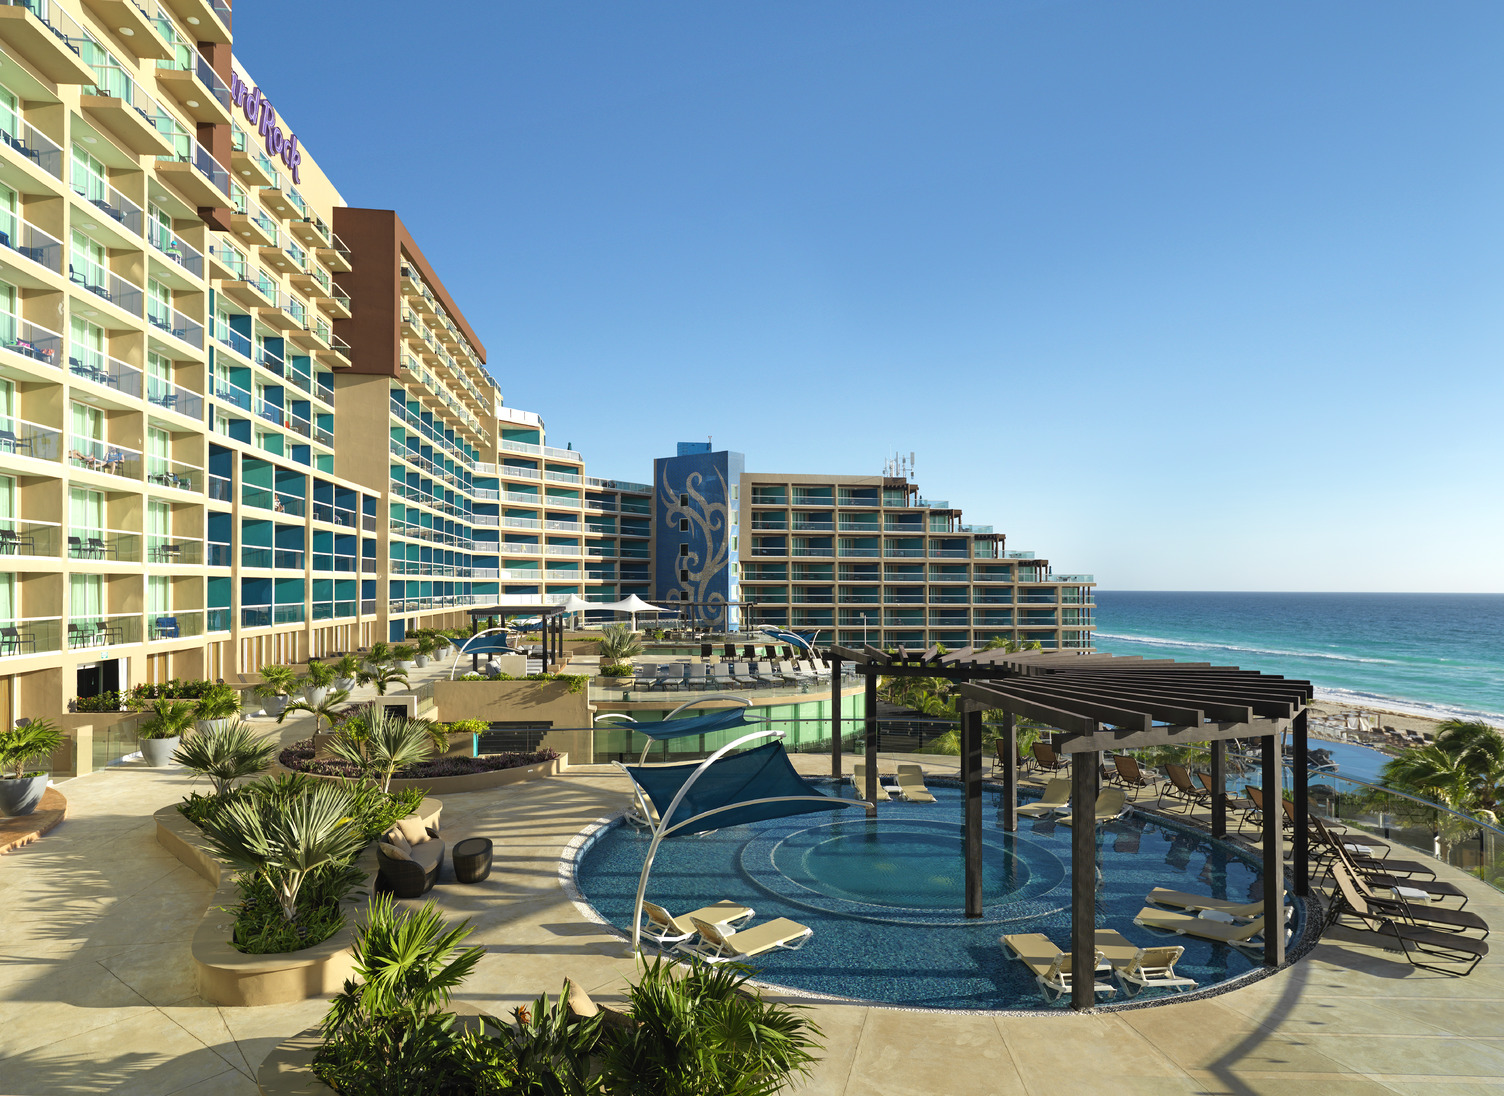 Propriedades do grupo RCD estão entre os principais hotéis de luxo do México e de Punta Cana, aponta U.S. News